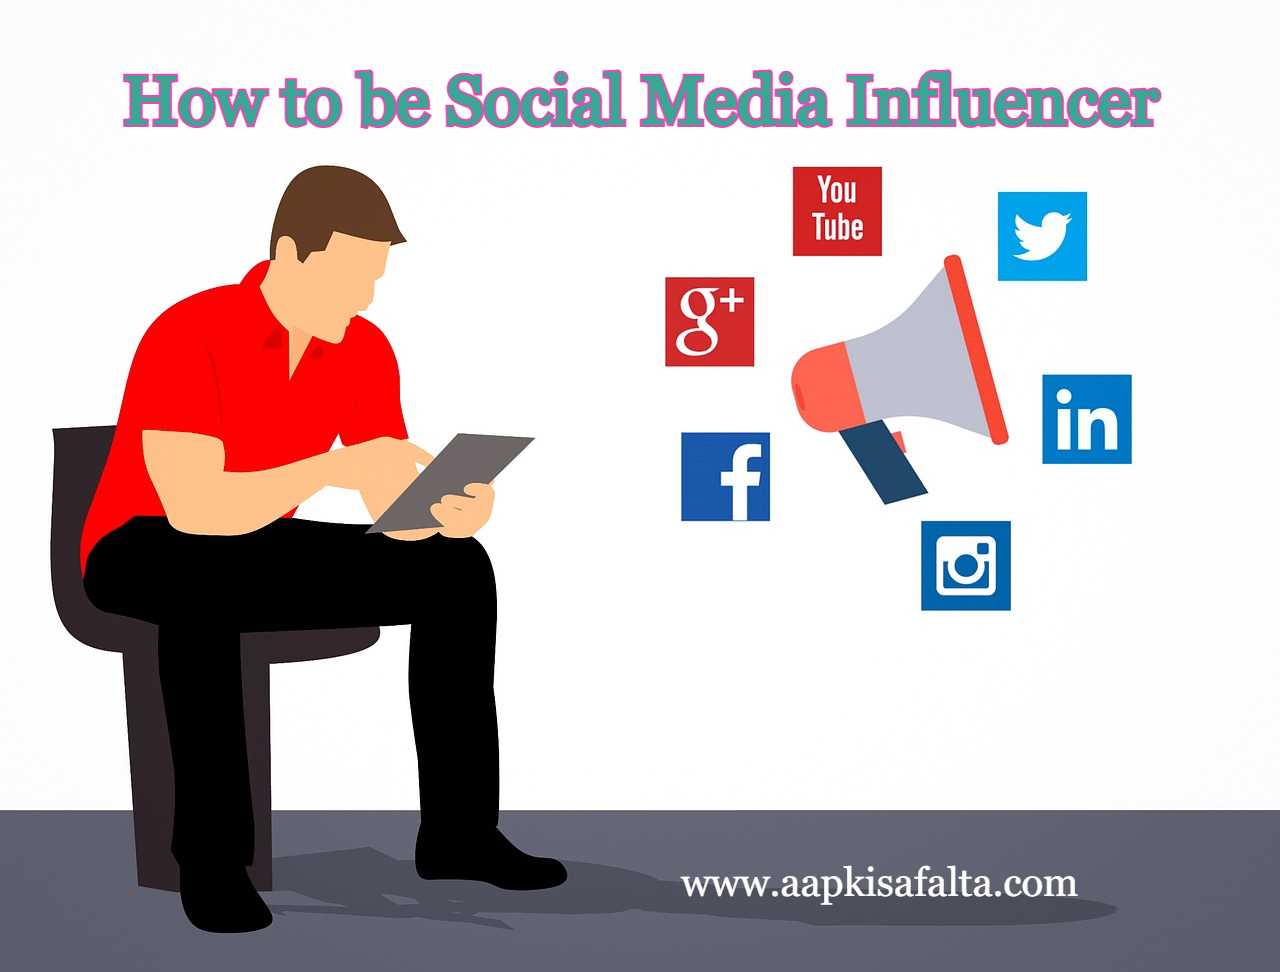 सोशल मीडिया इनफ्लुएंसर कैसे बने? How To Be Social Media Influencer